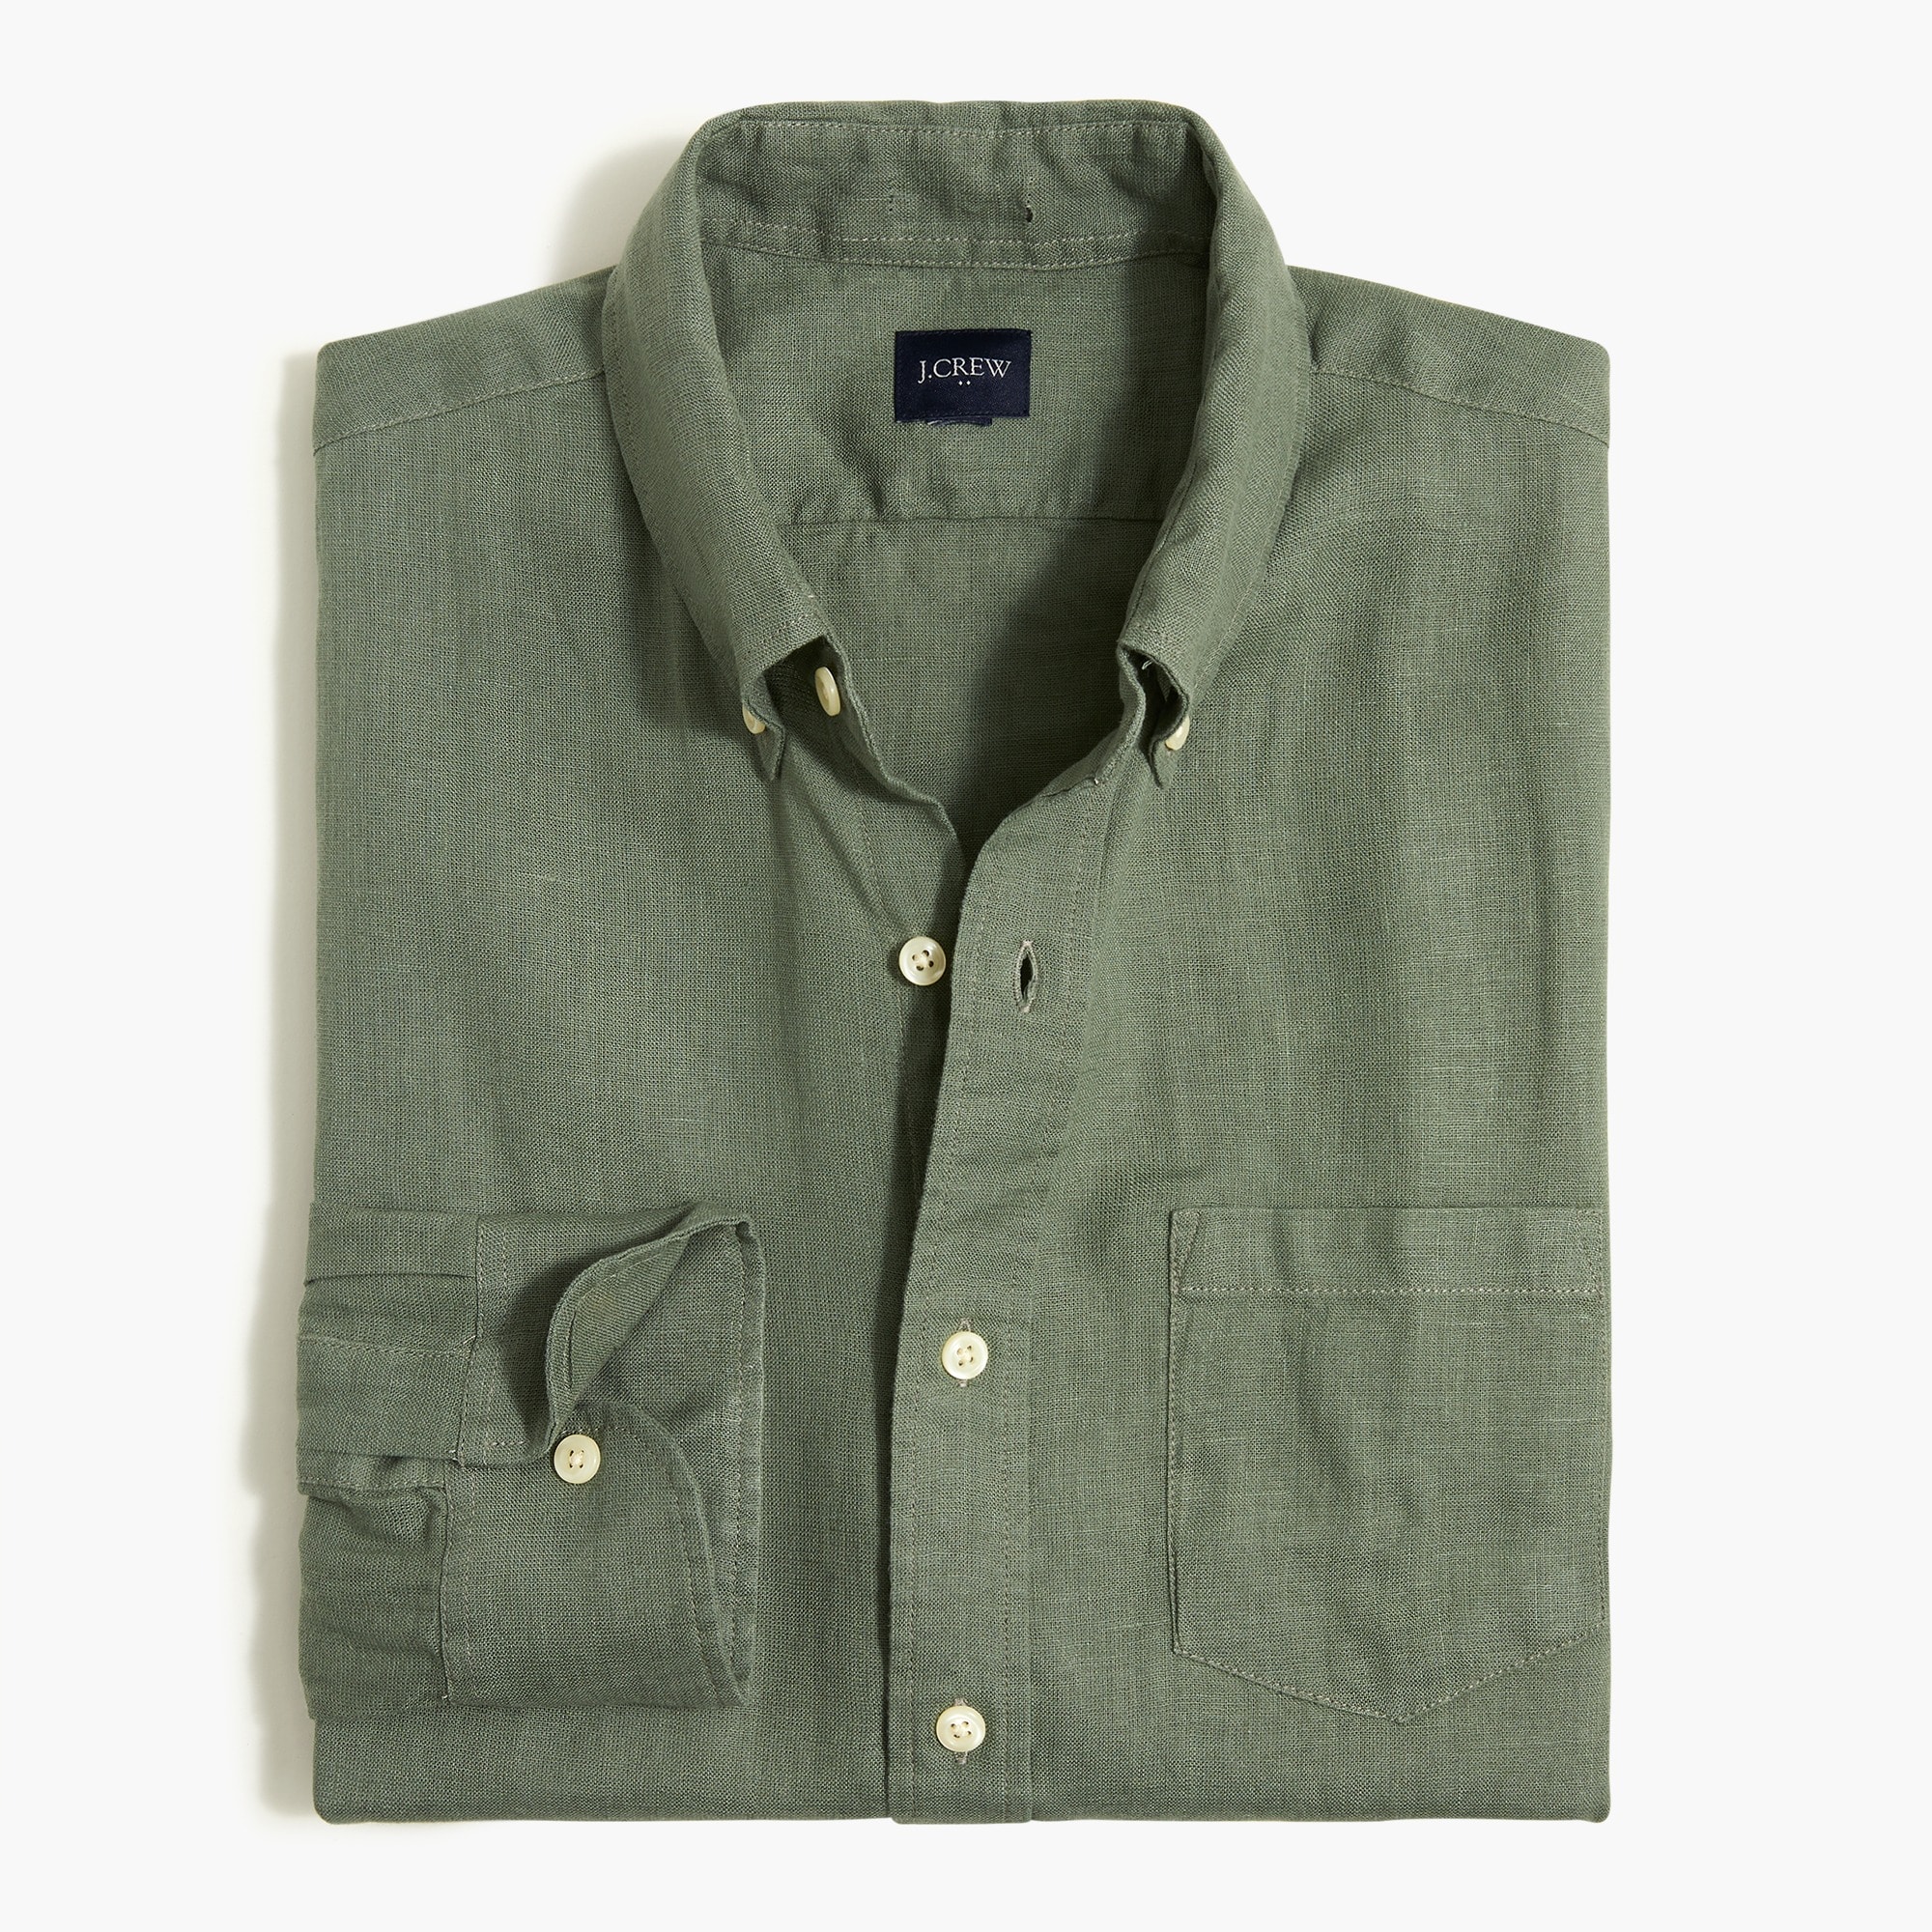  Classic linen-blend shirt